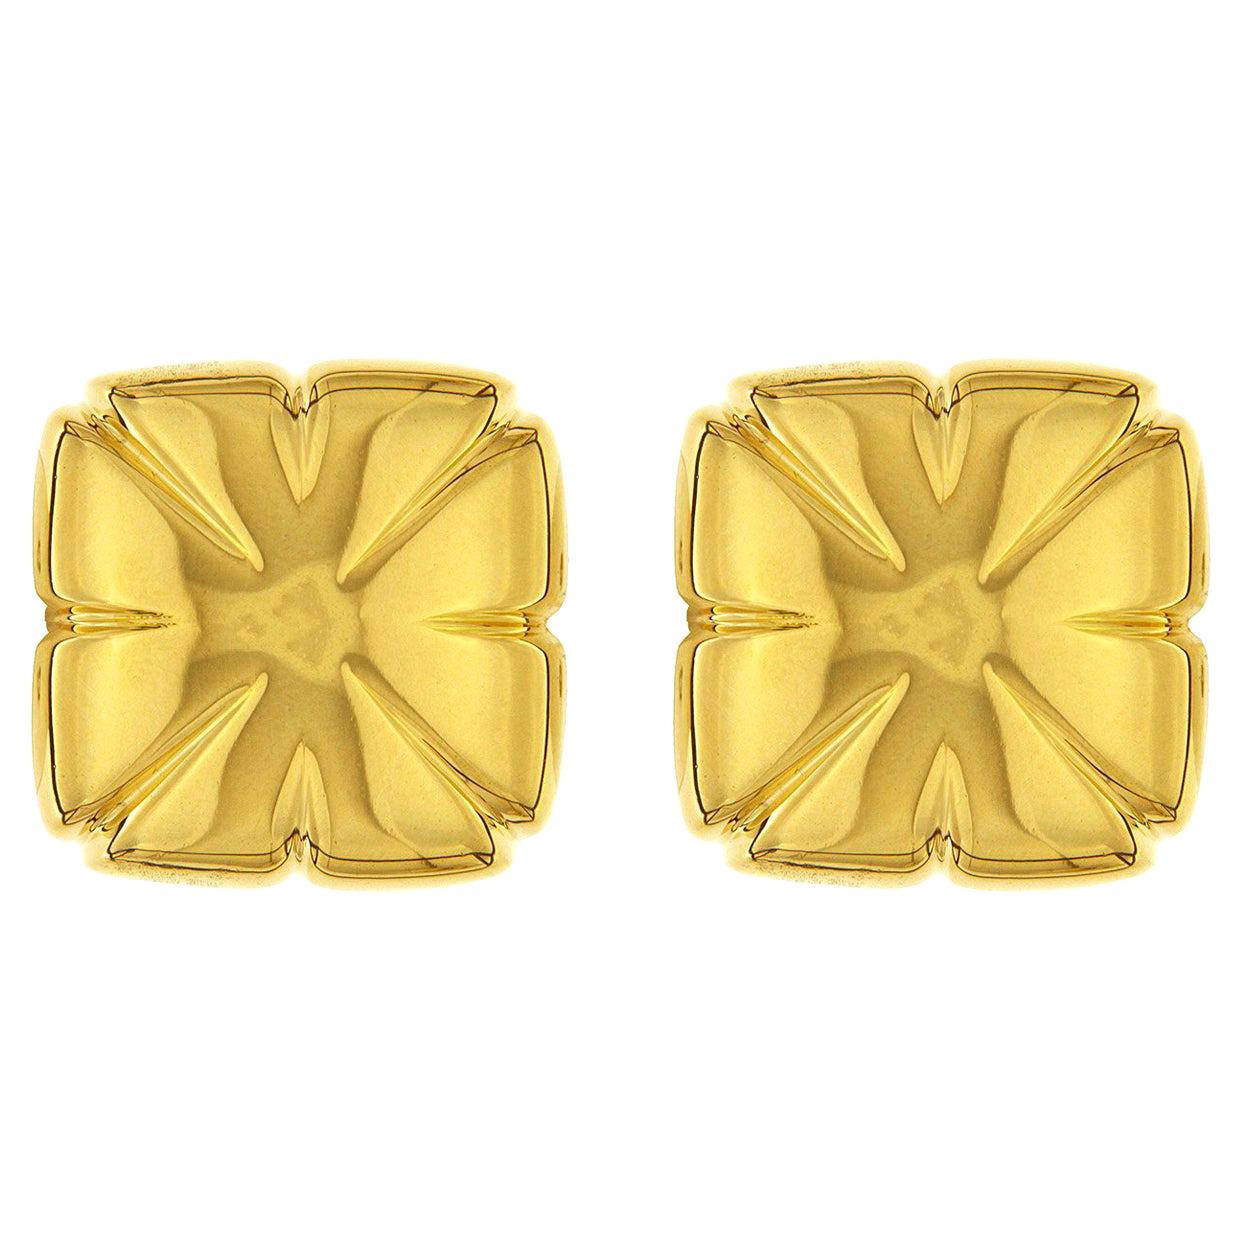 Valentin Magro Earrings Square 18 Karat Yellow Gold Earrings